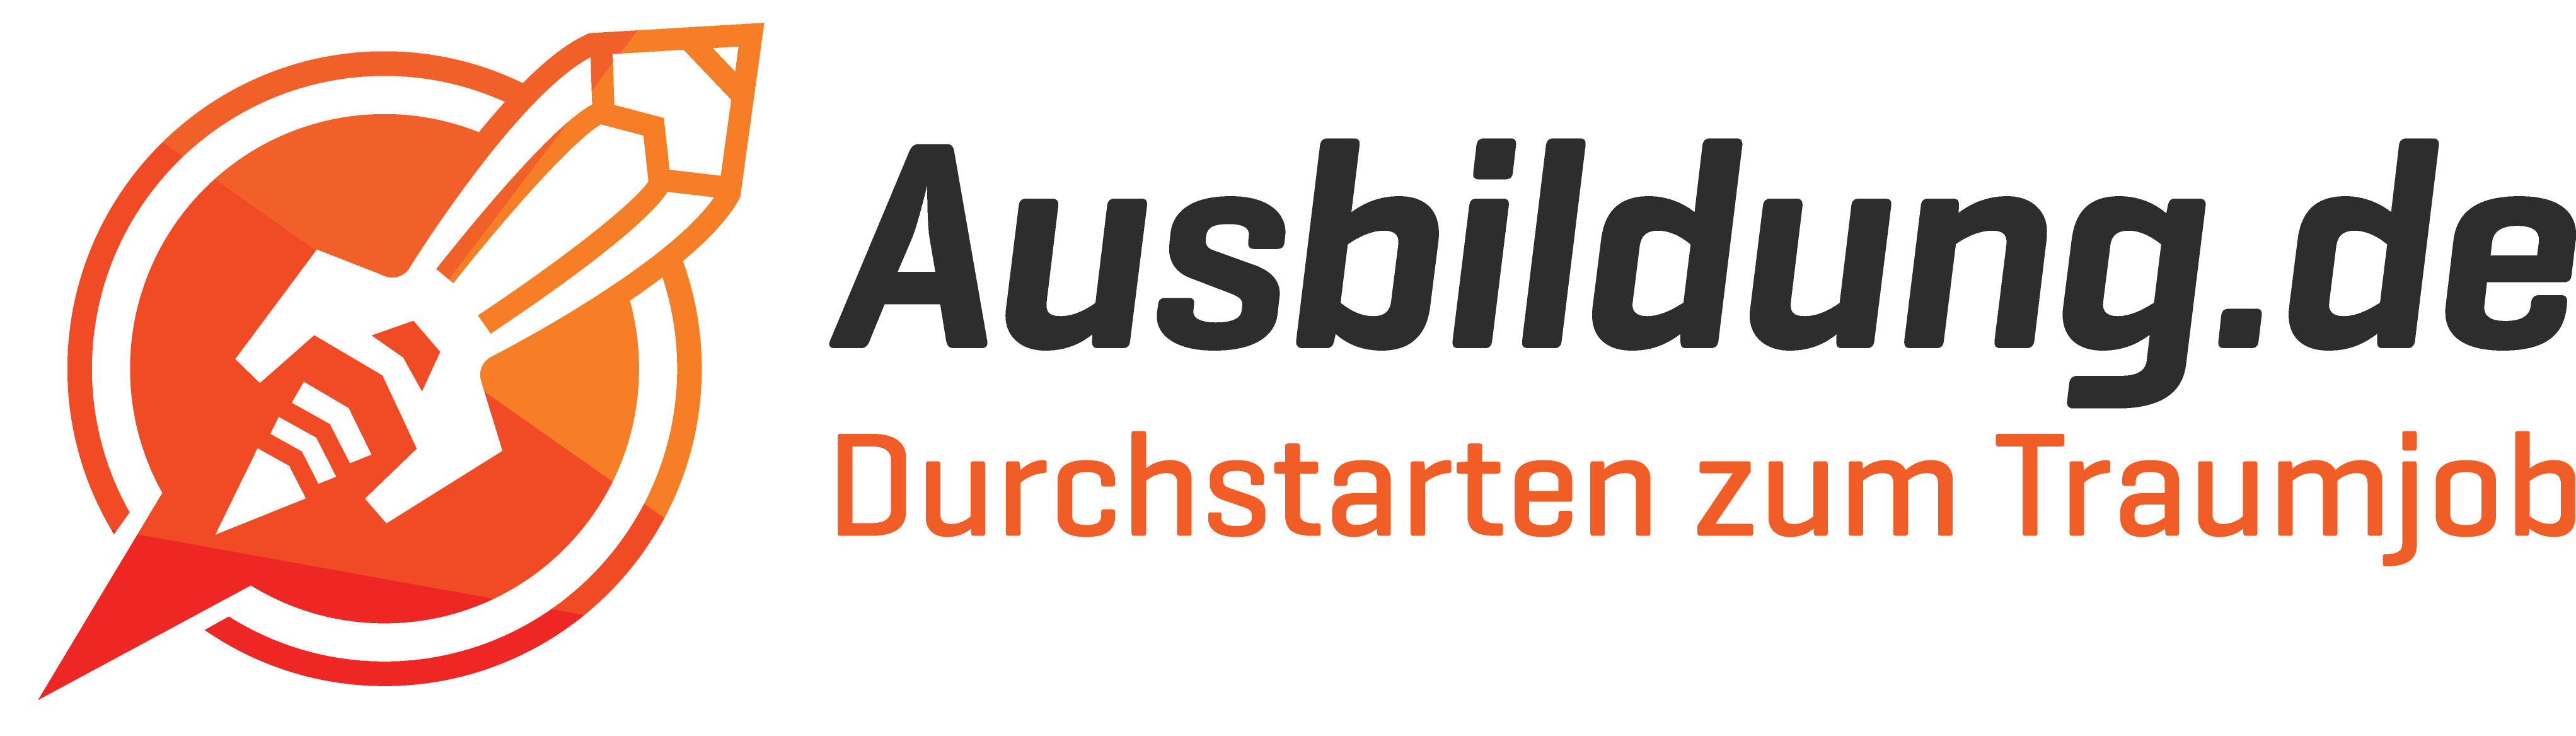 Logo Ausbildung.de